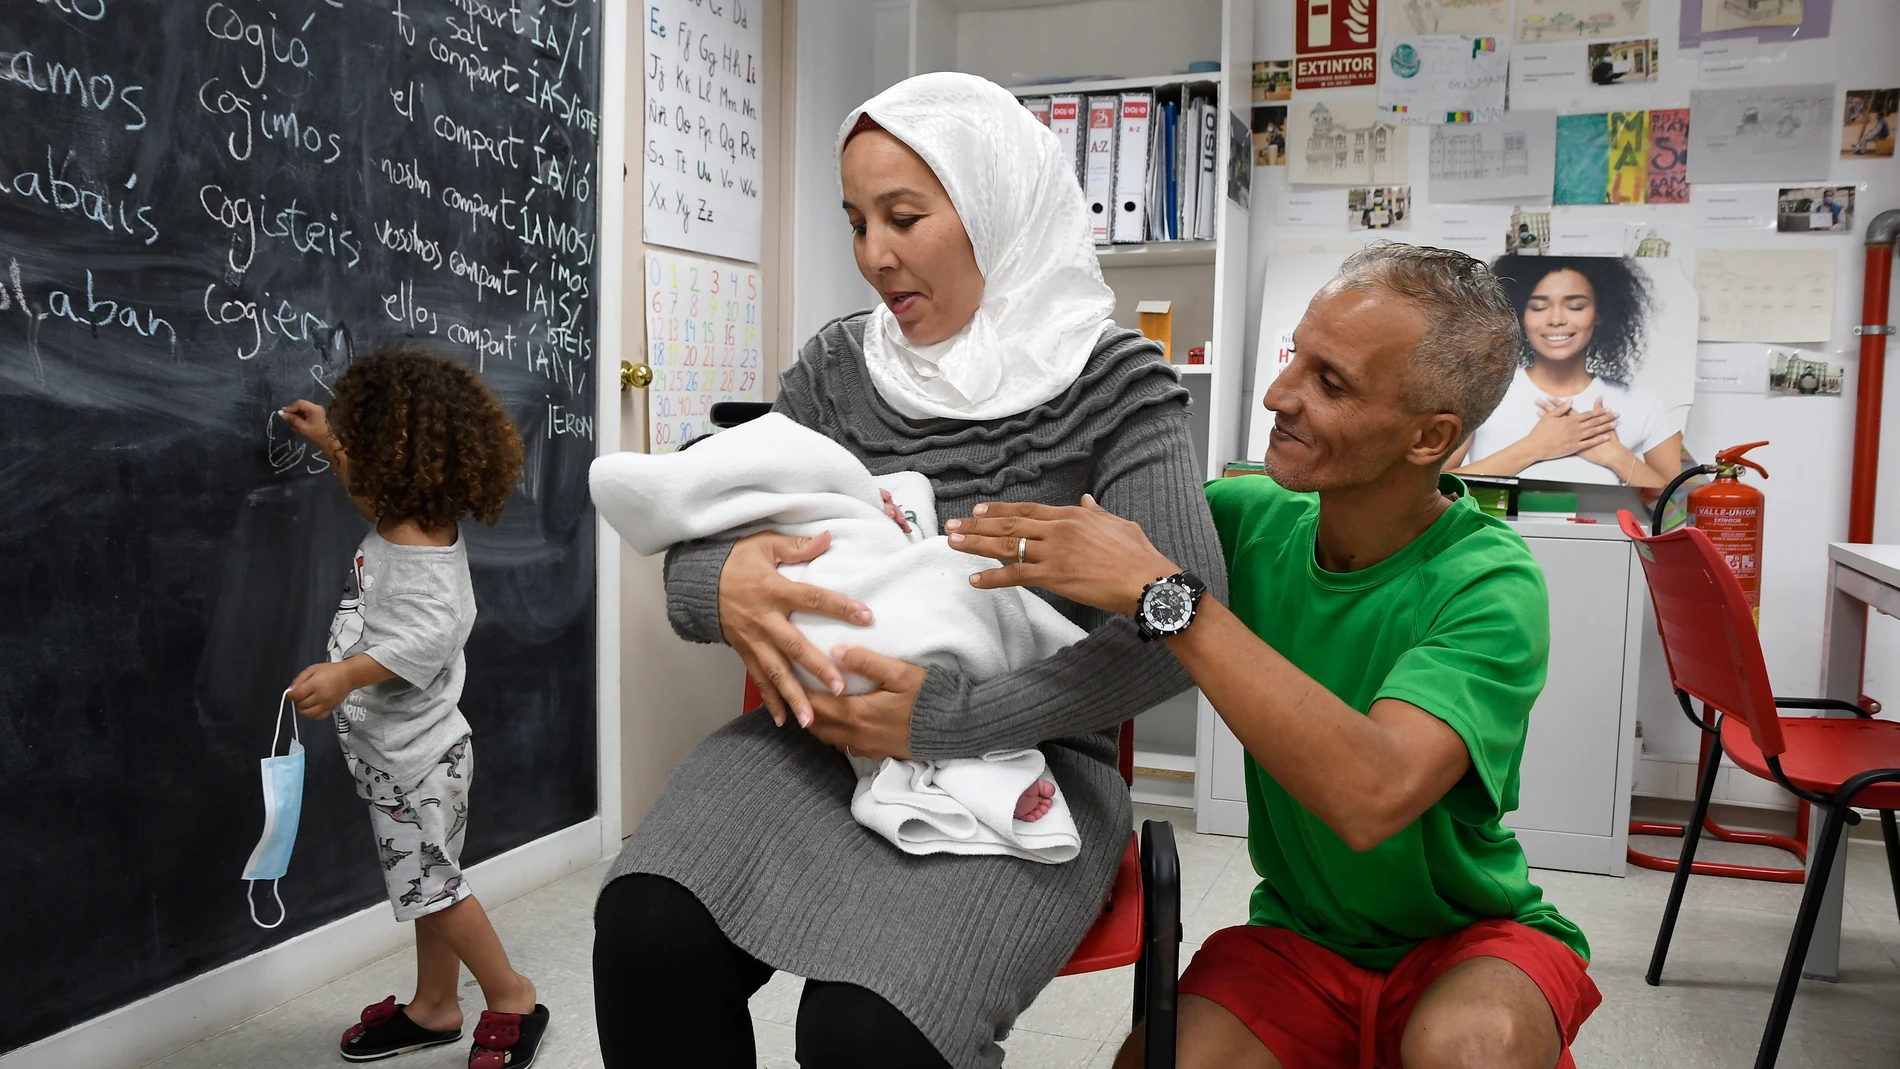 Saida de 39 años lleva en sus brazos al pequeño Wassim, junto a su marido Mohamed de 44 años, y su hija Amani de cuatro años